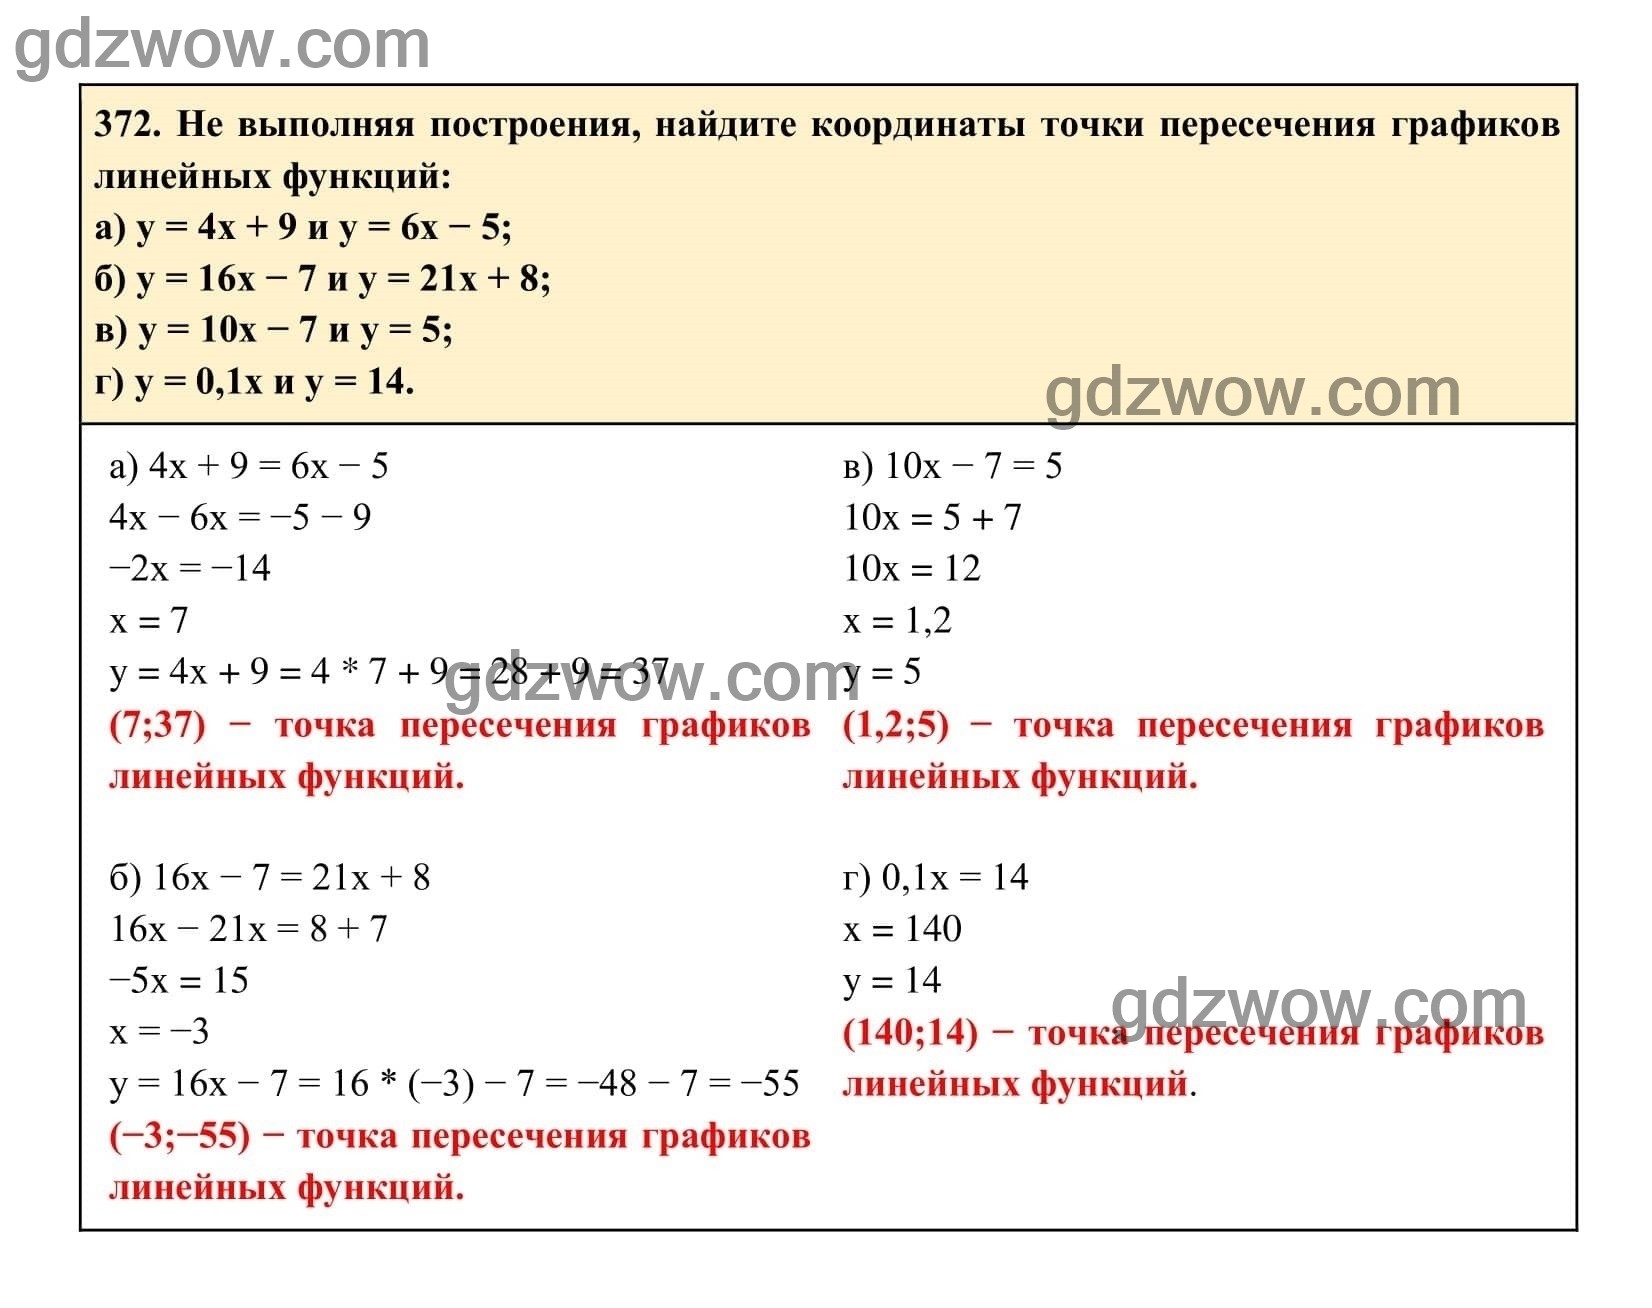 Упражнение 372 - ГДЗ по Алгебре 7 класс Учебник Макарычев (решебник) - GDZwow